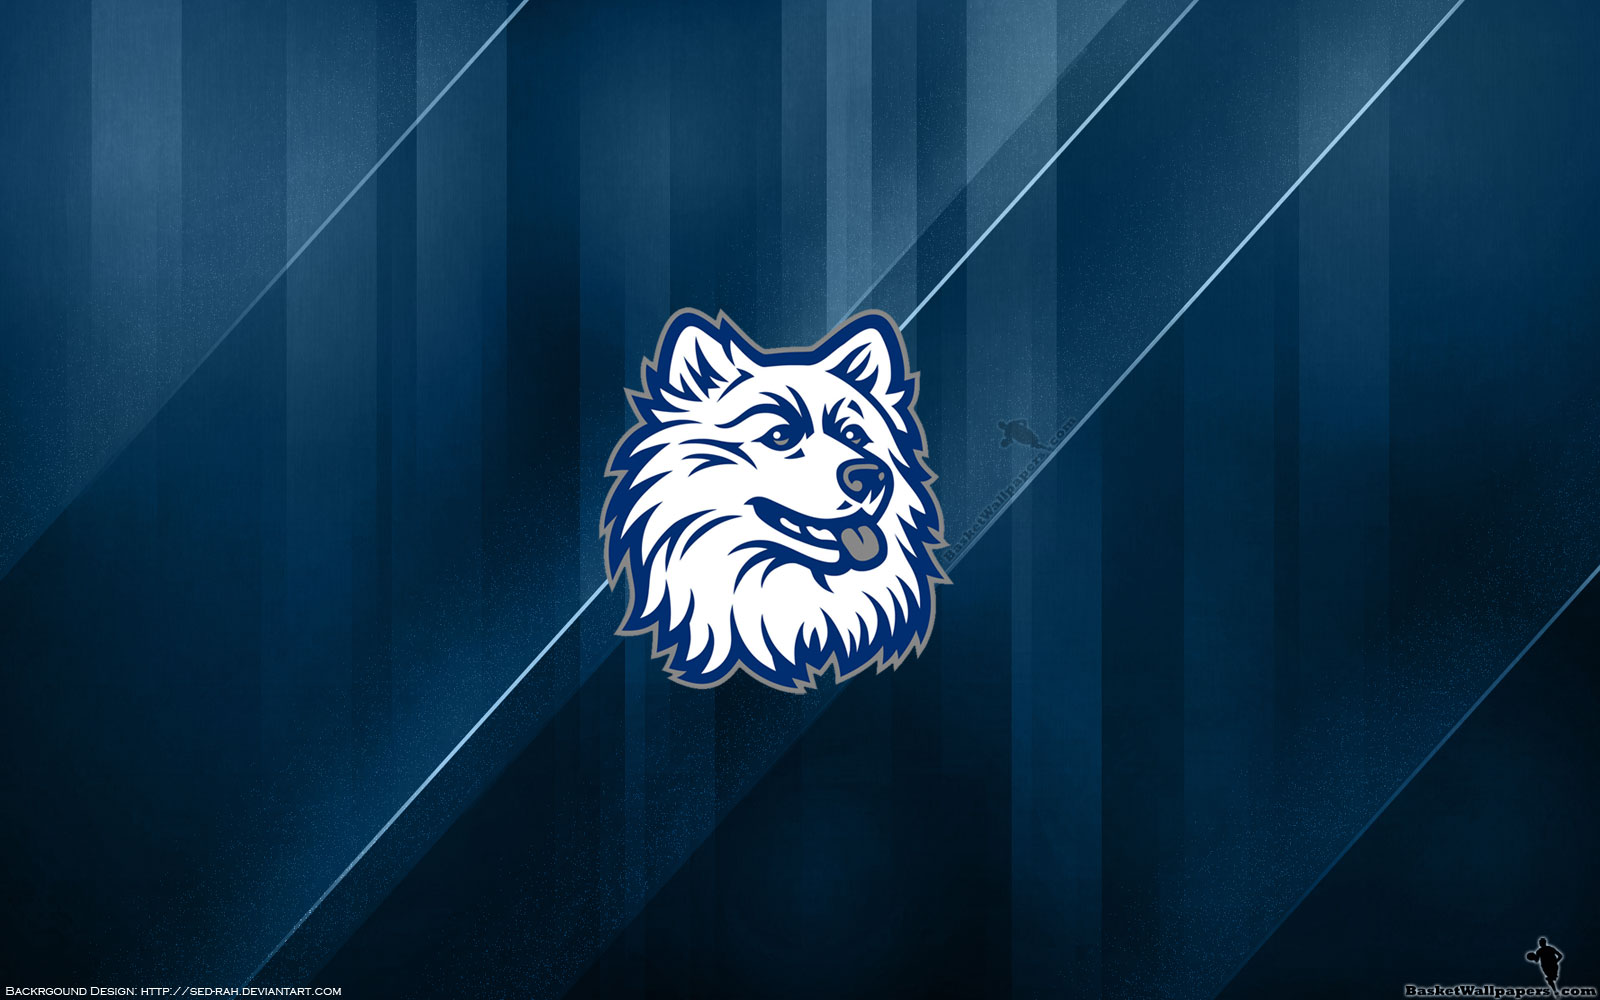 UCONN Huskies Logo Widescreen Wallpaper | Basketball Wallpapers at ...
